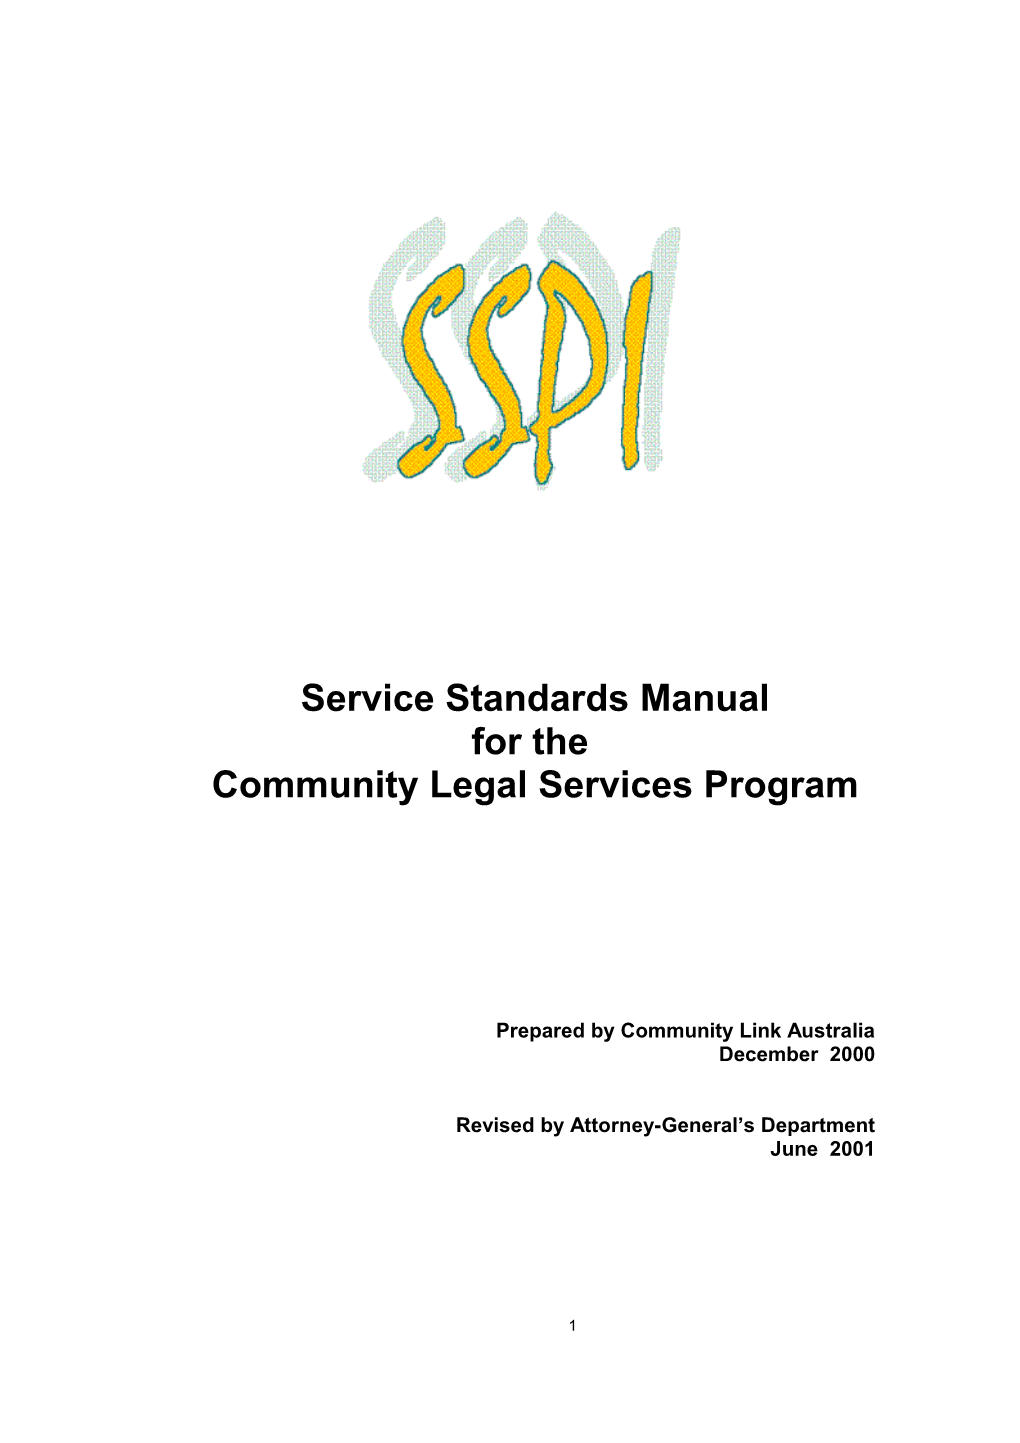 Community Legal Services Program